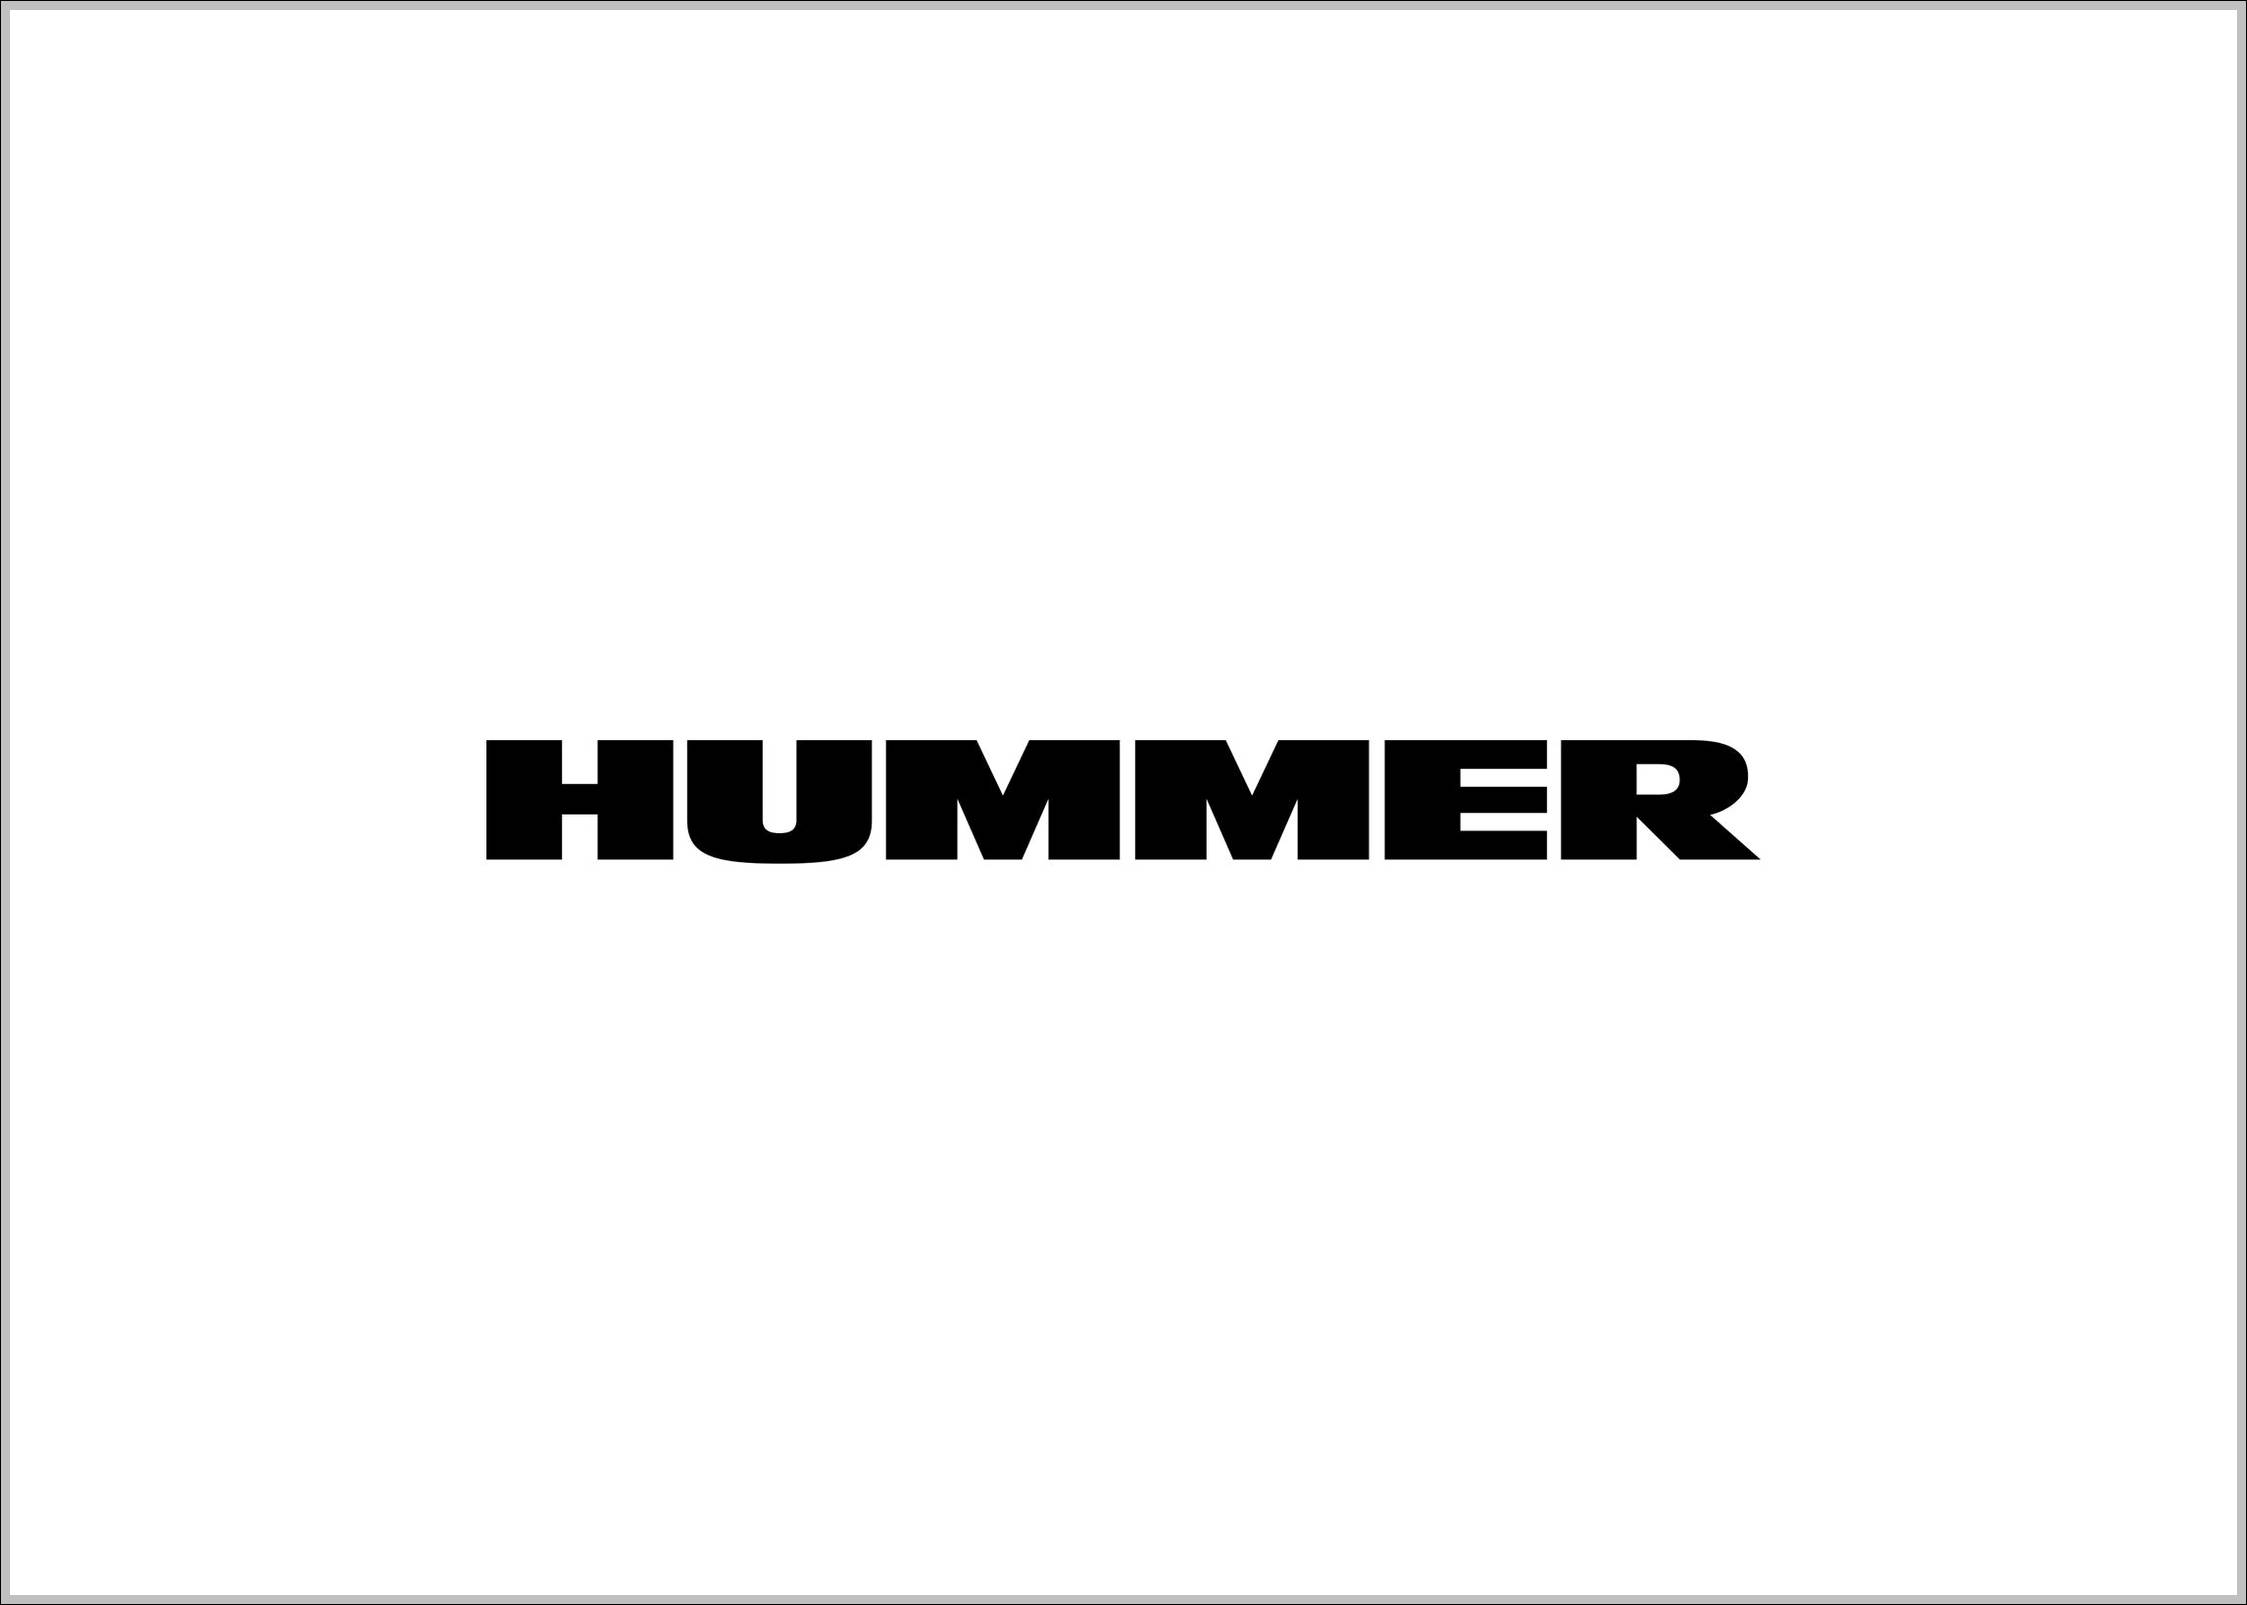 Hummer sign